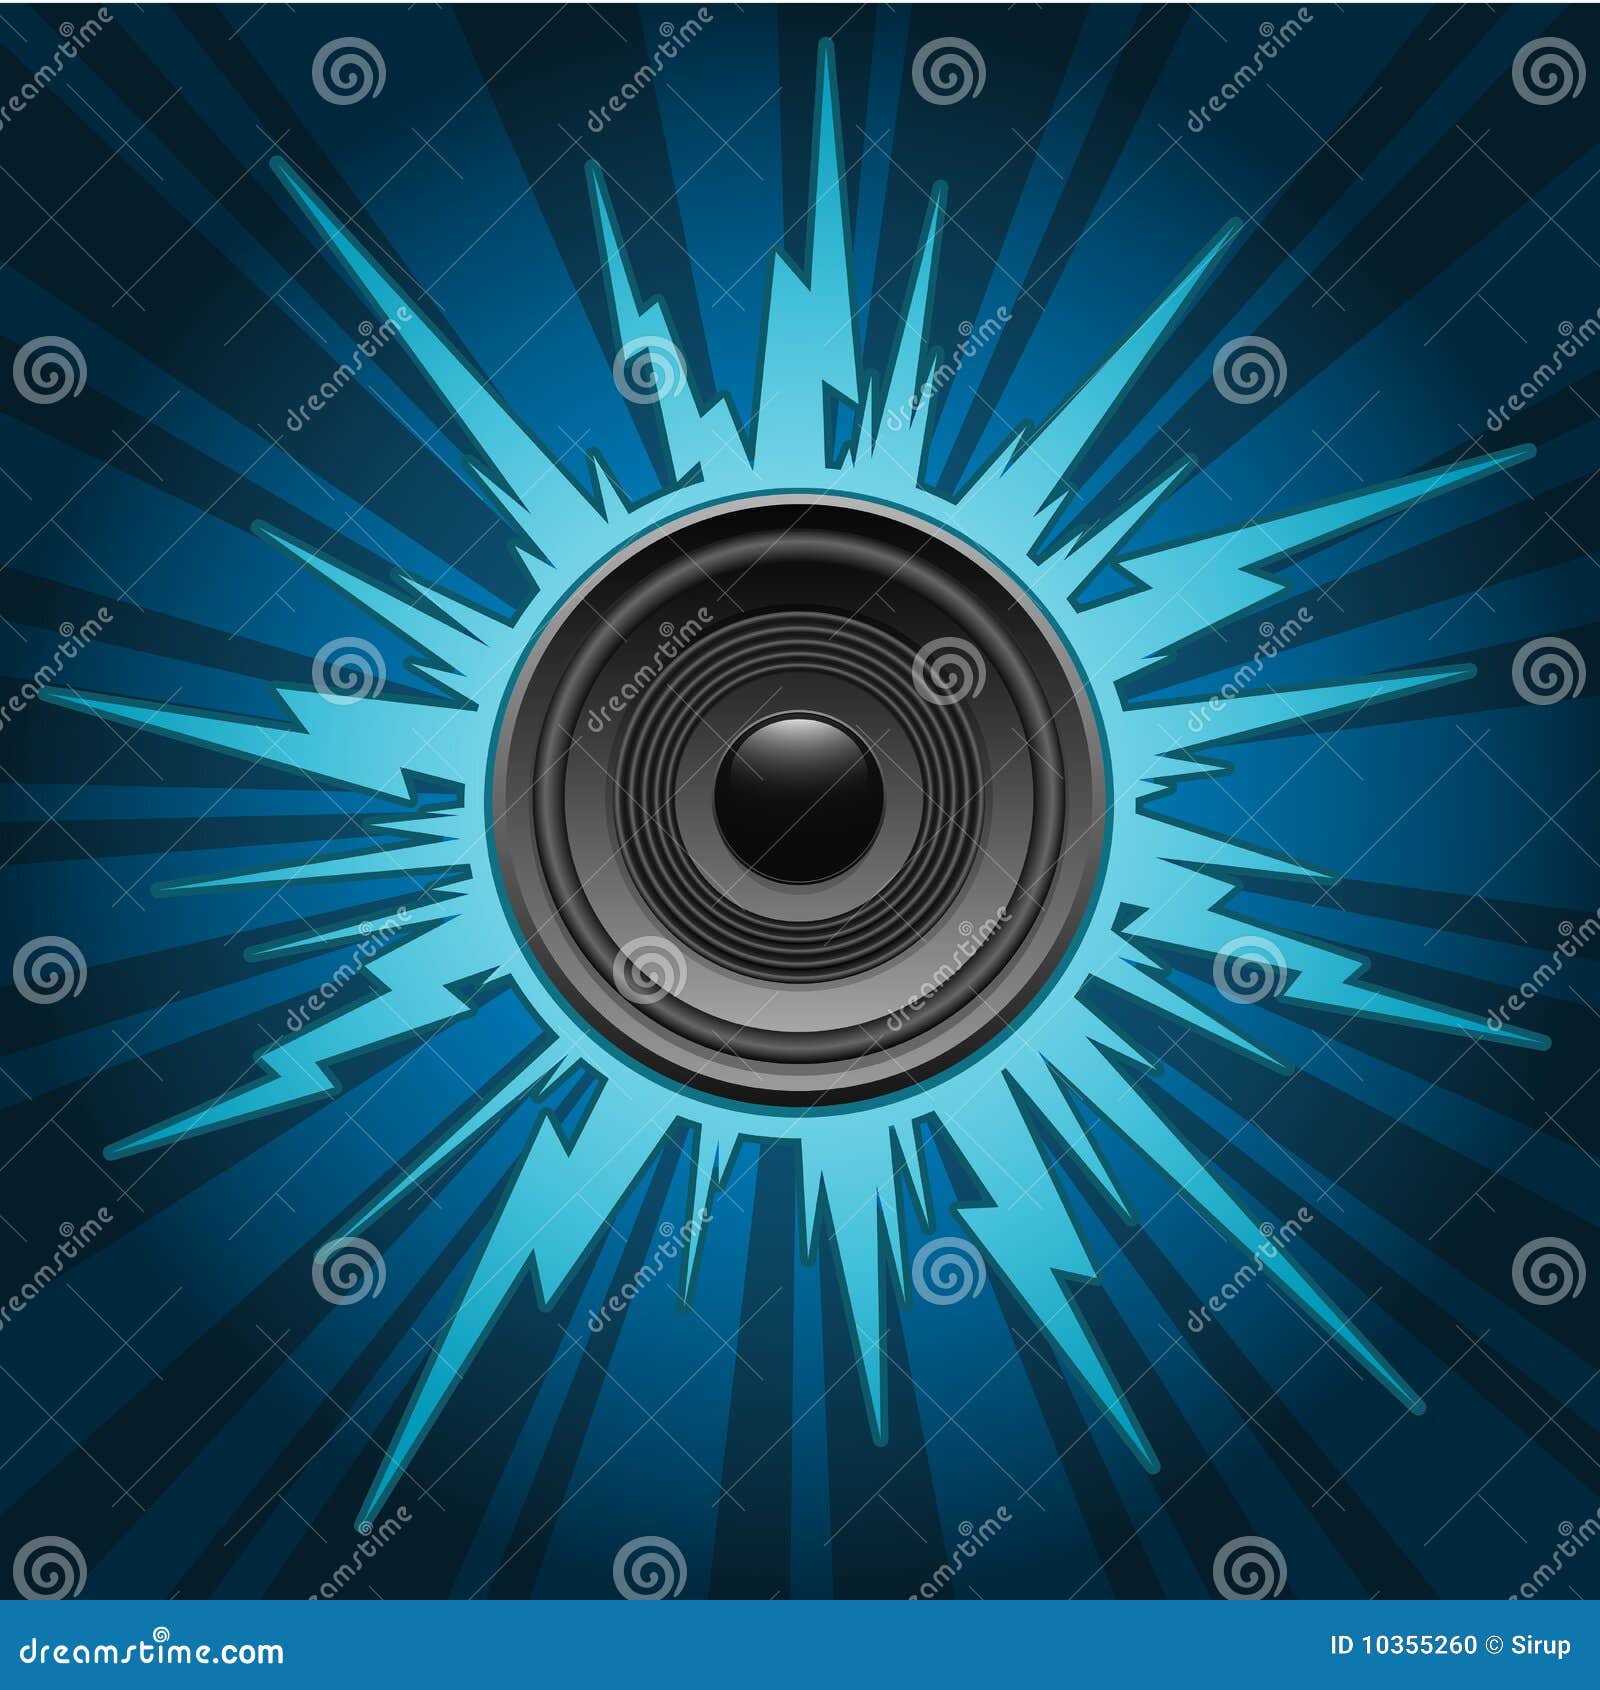 speaker on exploding background